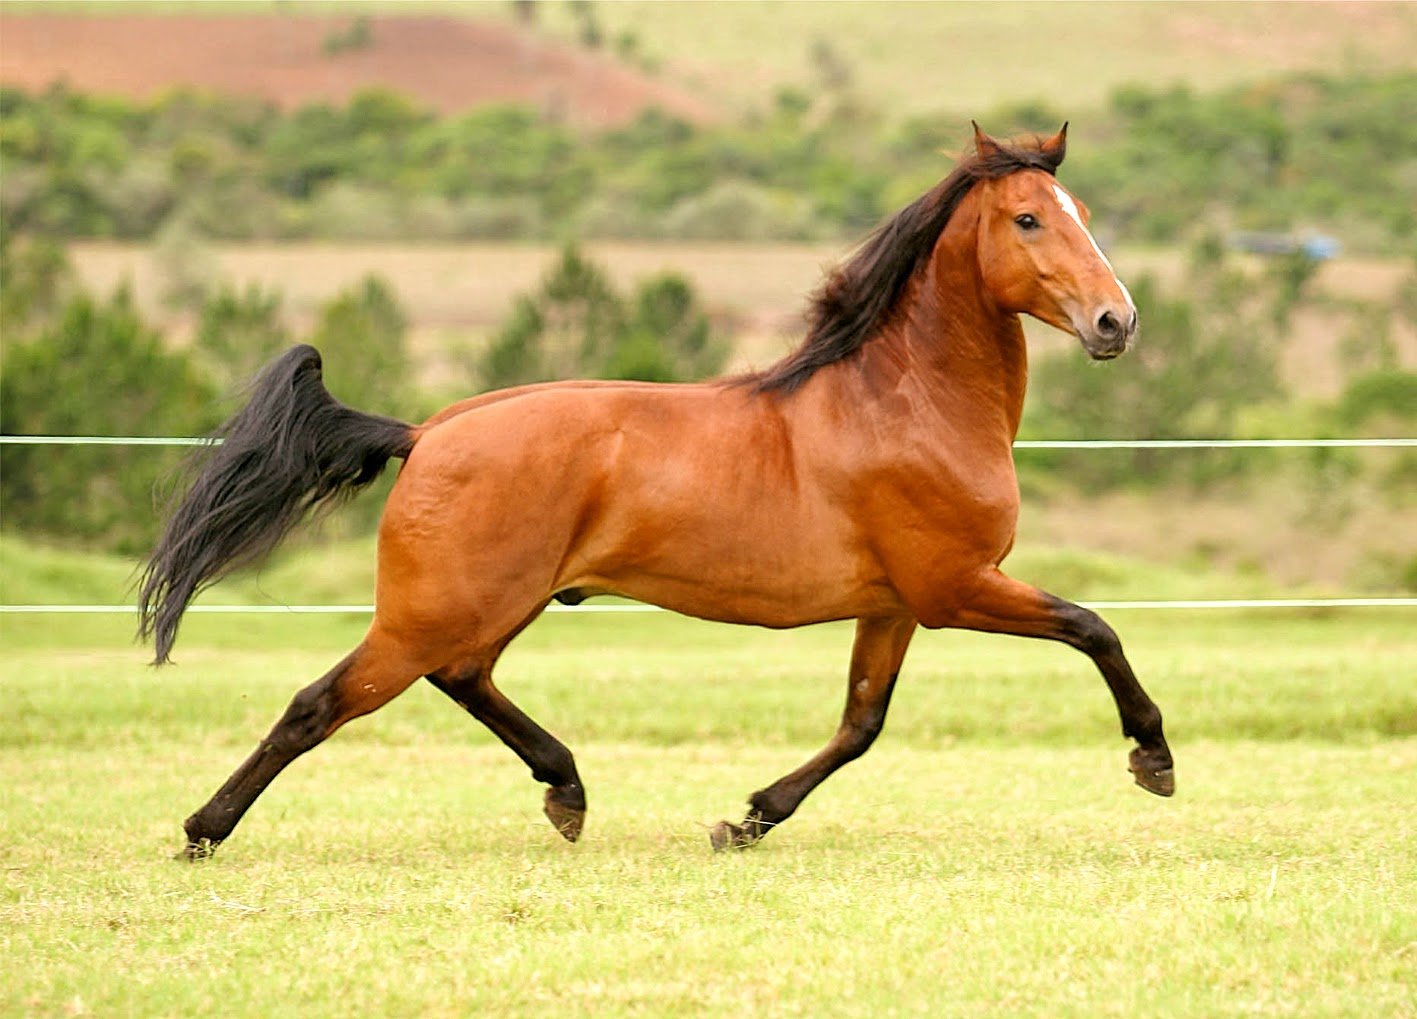 Quais são as características de um cavalo 'frente-aberta'? - Quora